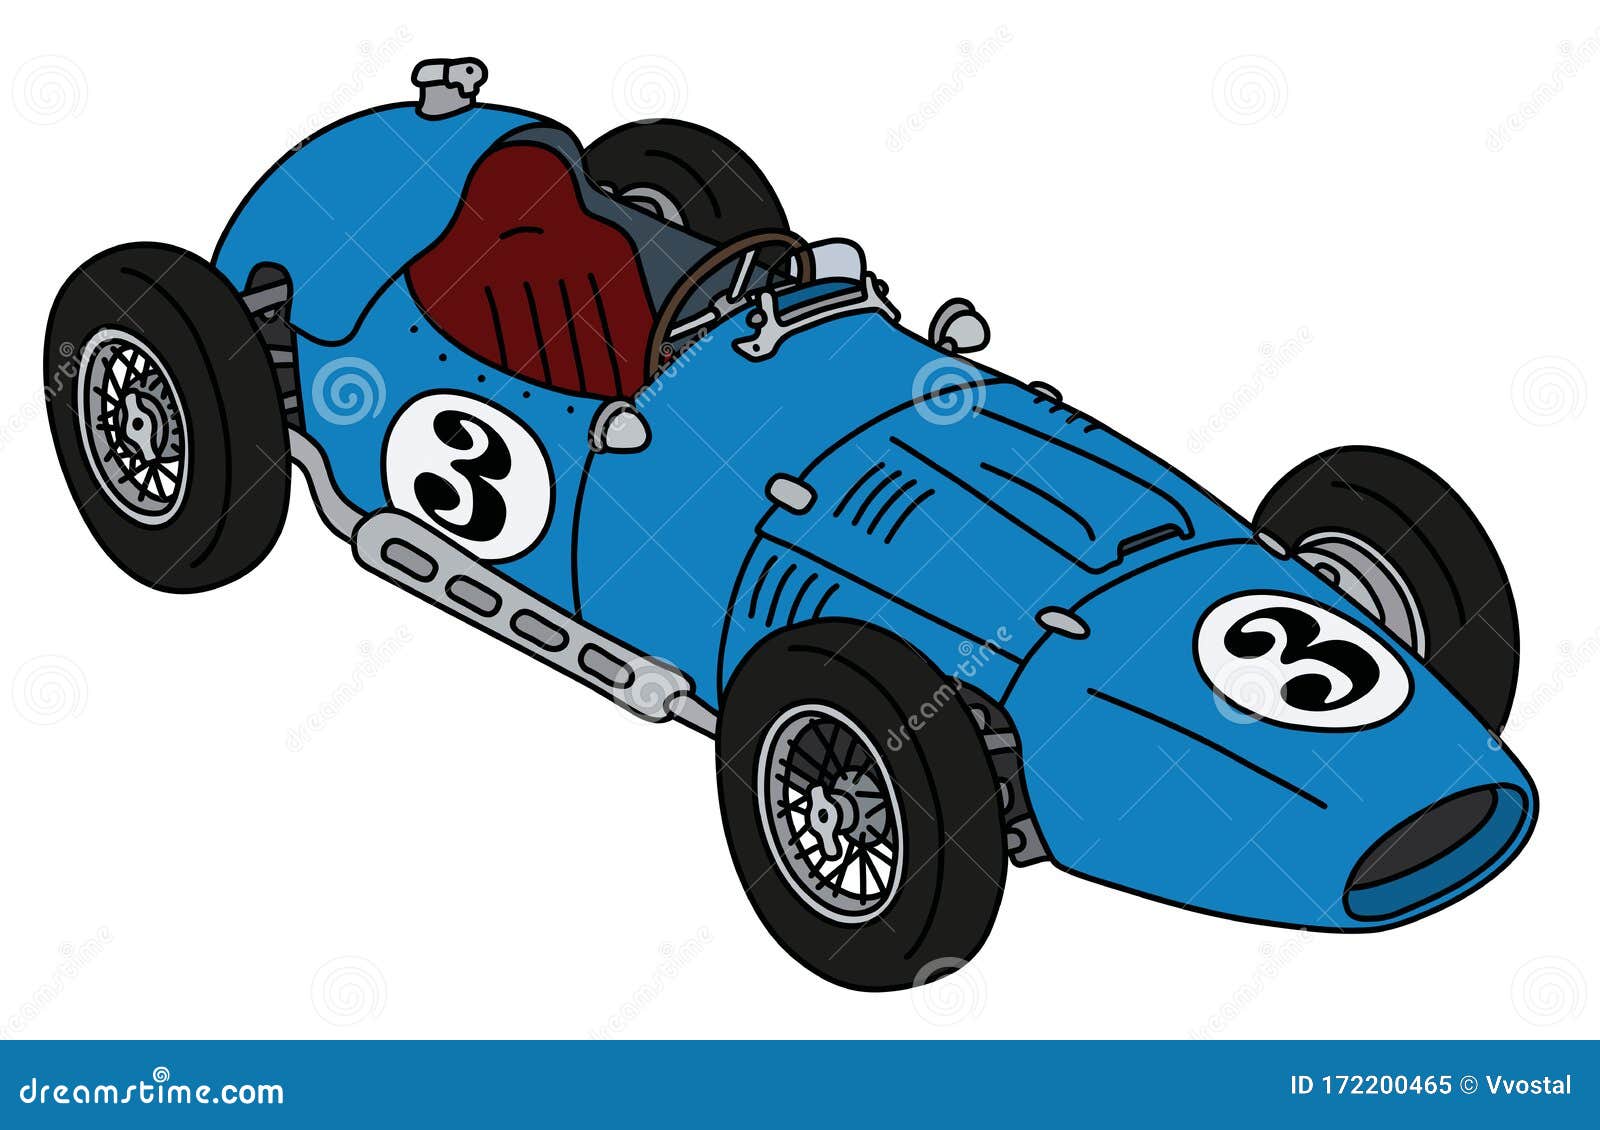 the retro blue racecar